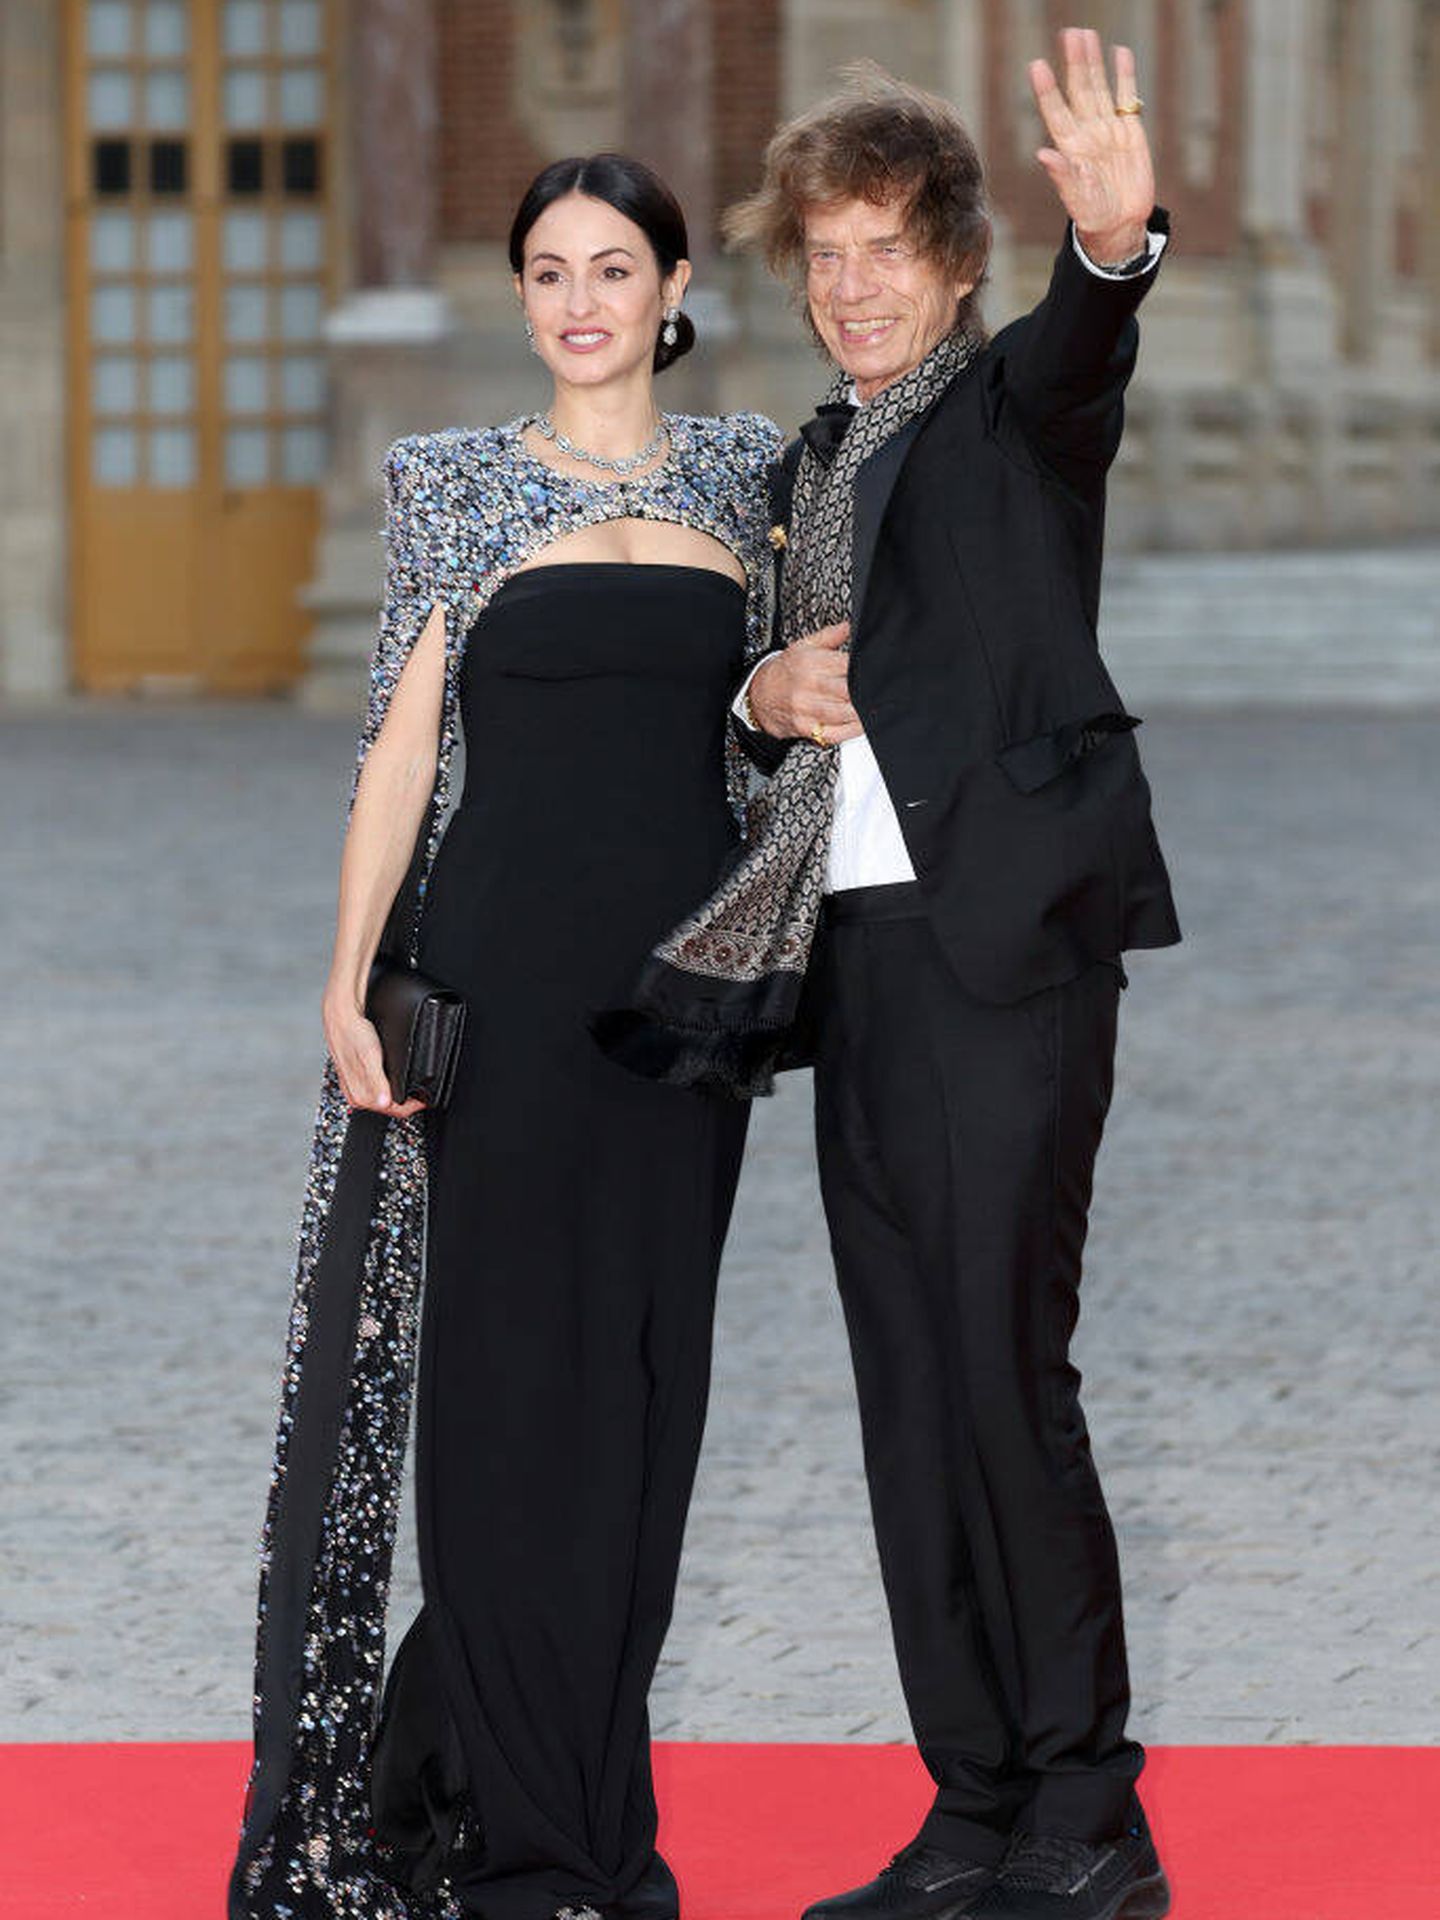 Melanie Hamrick y Mick Jagger a su llegada al palacio de Versalles. (Getty Images)